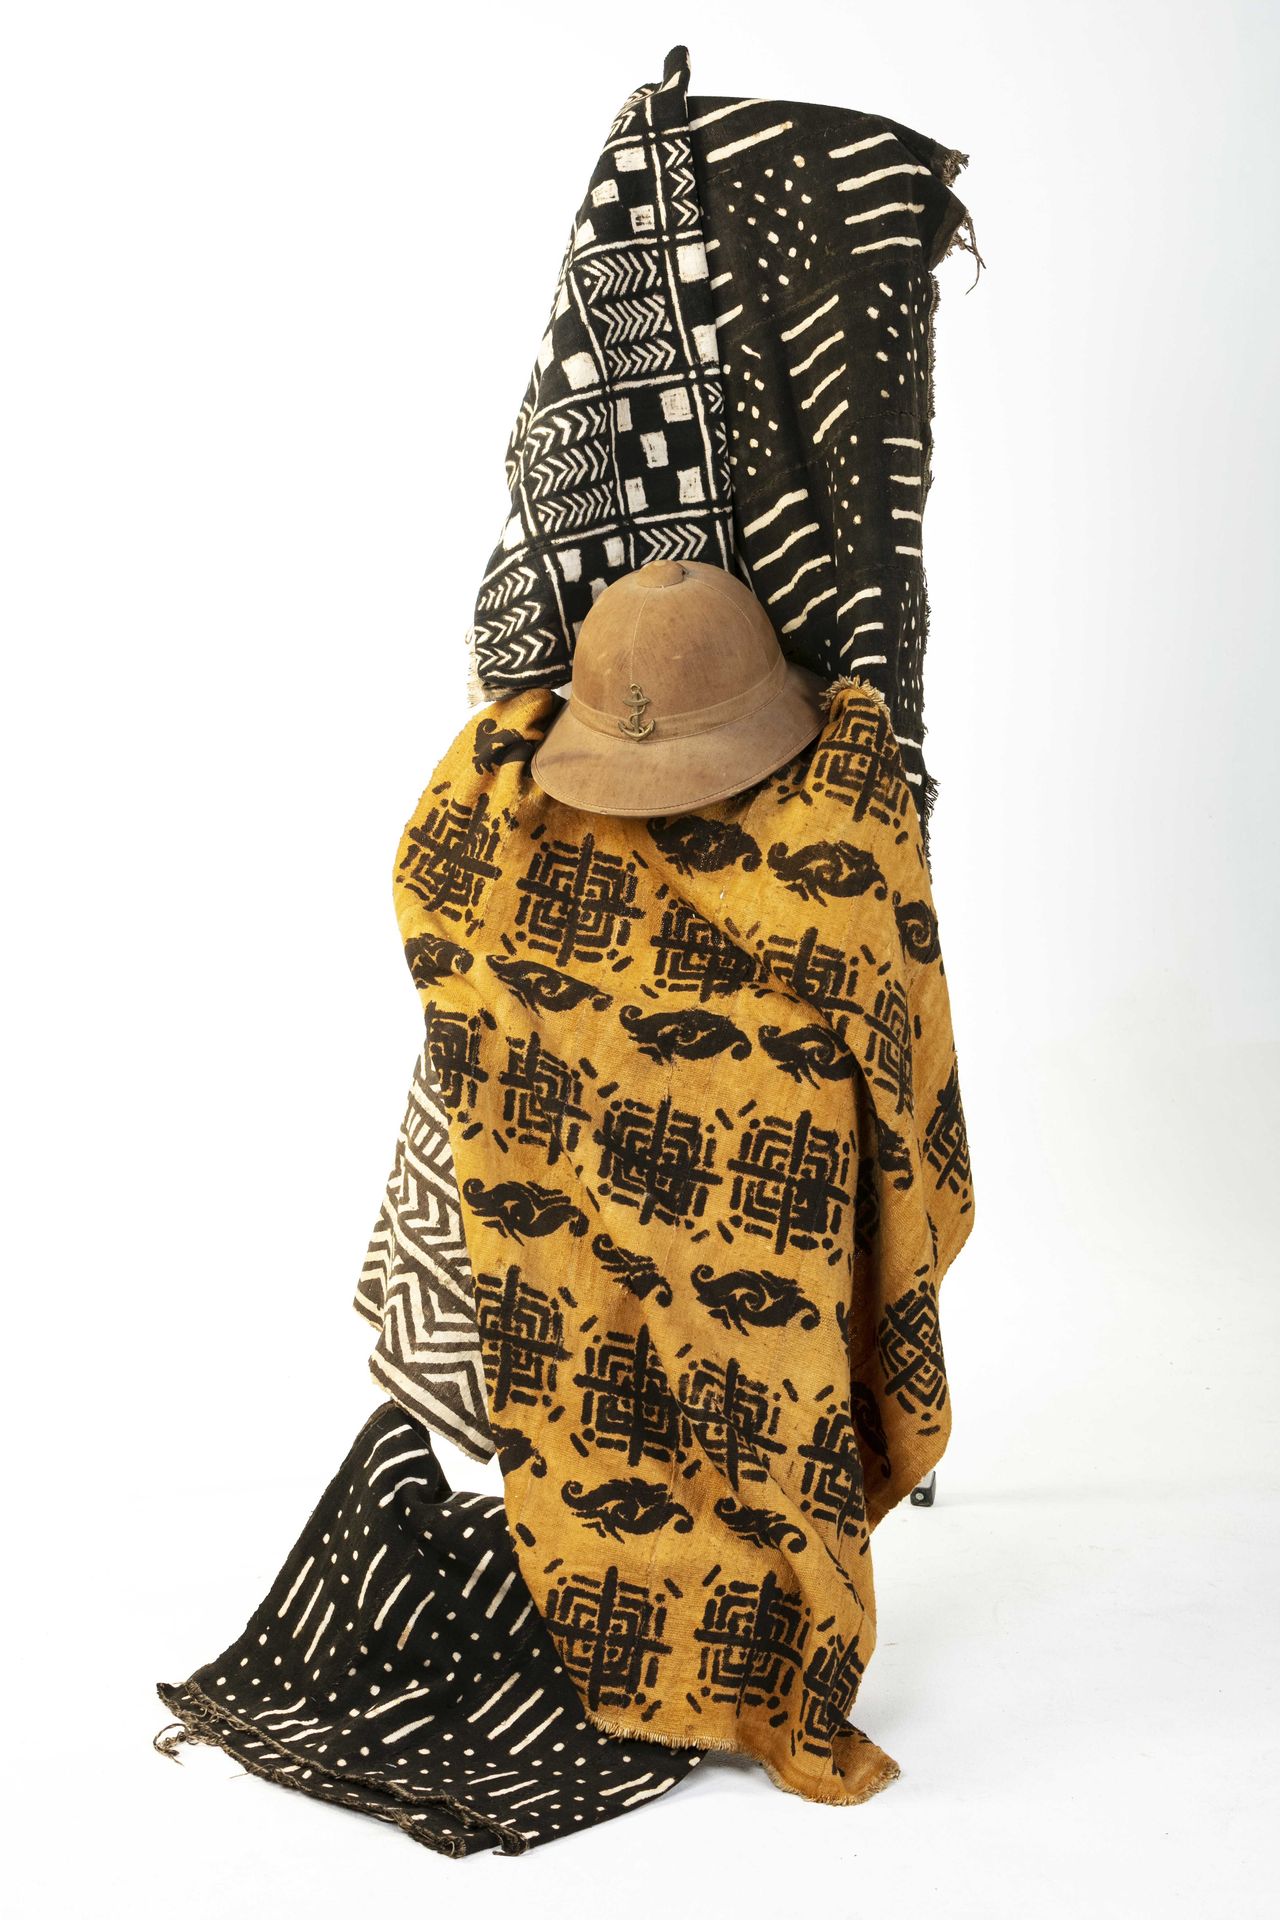 Null 一组织物和布，以及殖民地风格的帽子 黑色背景织物，几何图案，黄色背景织物，阴影棕色图案。殖民地风格的头盔帽
布衣套装和2顶帽子